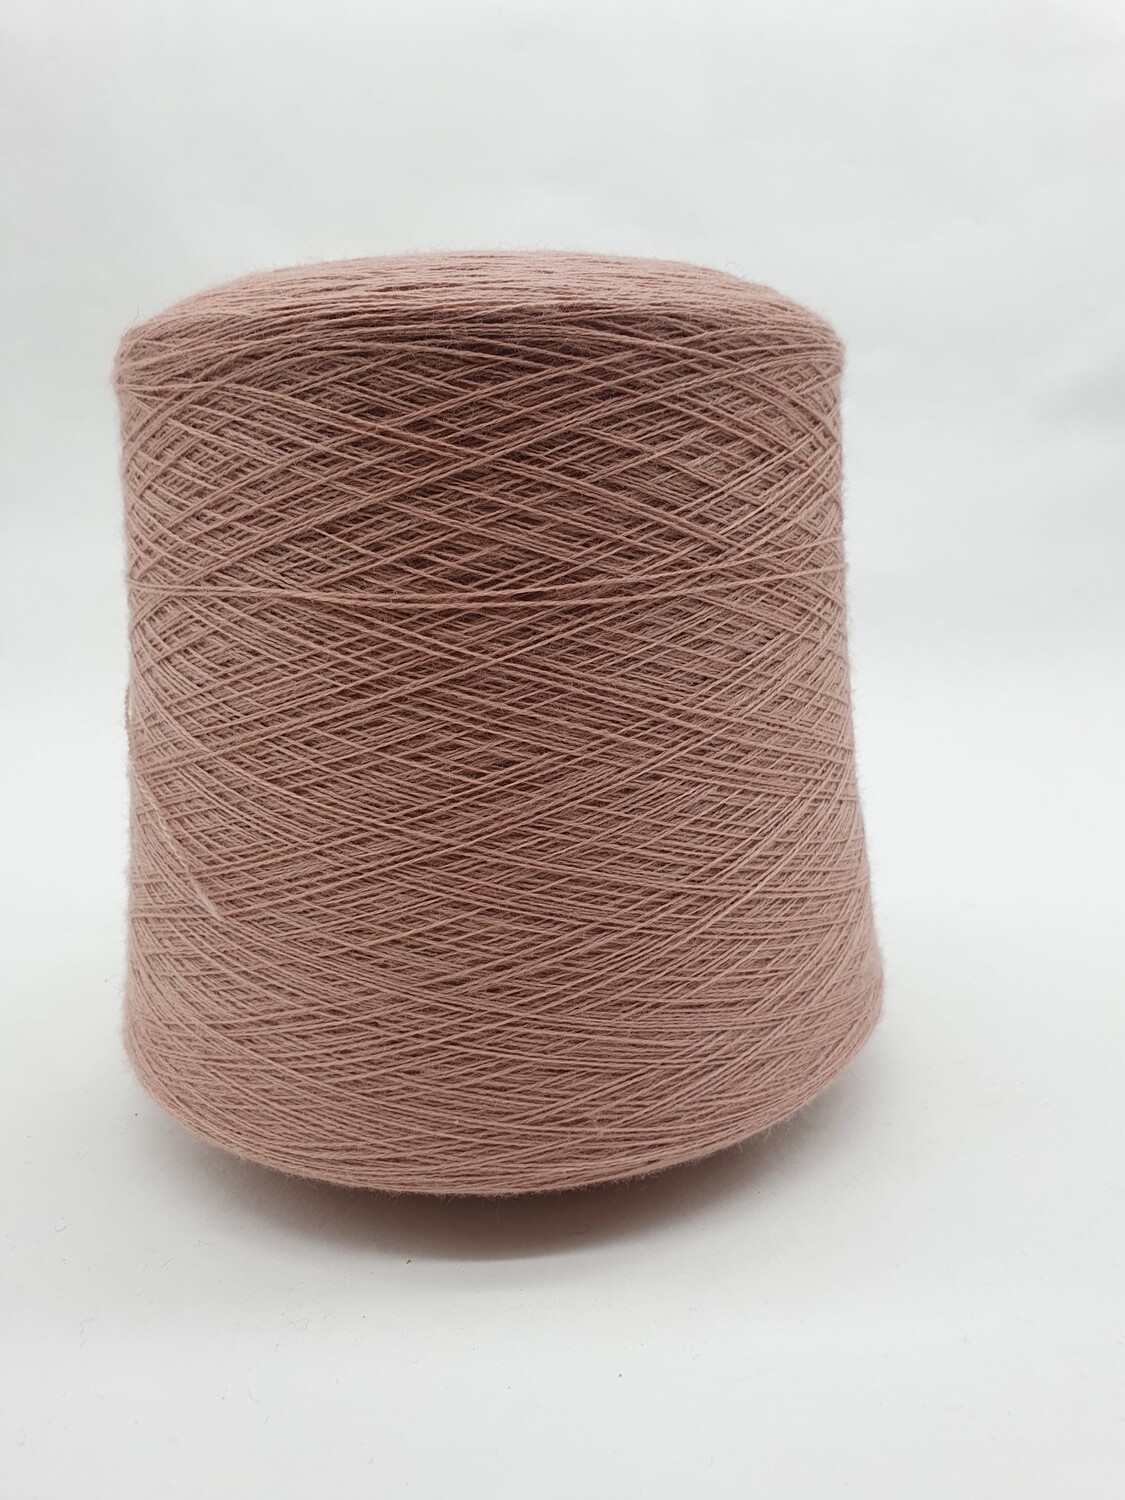 Пряжа Lane Rossi Amico Soft (100% мериносовая шерсть гребенная), 30/2 (1500м/100гр), розовое дерево